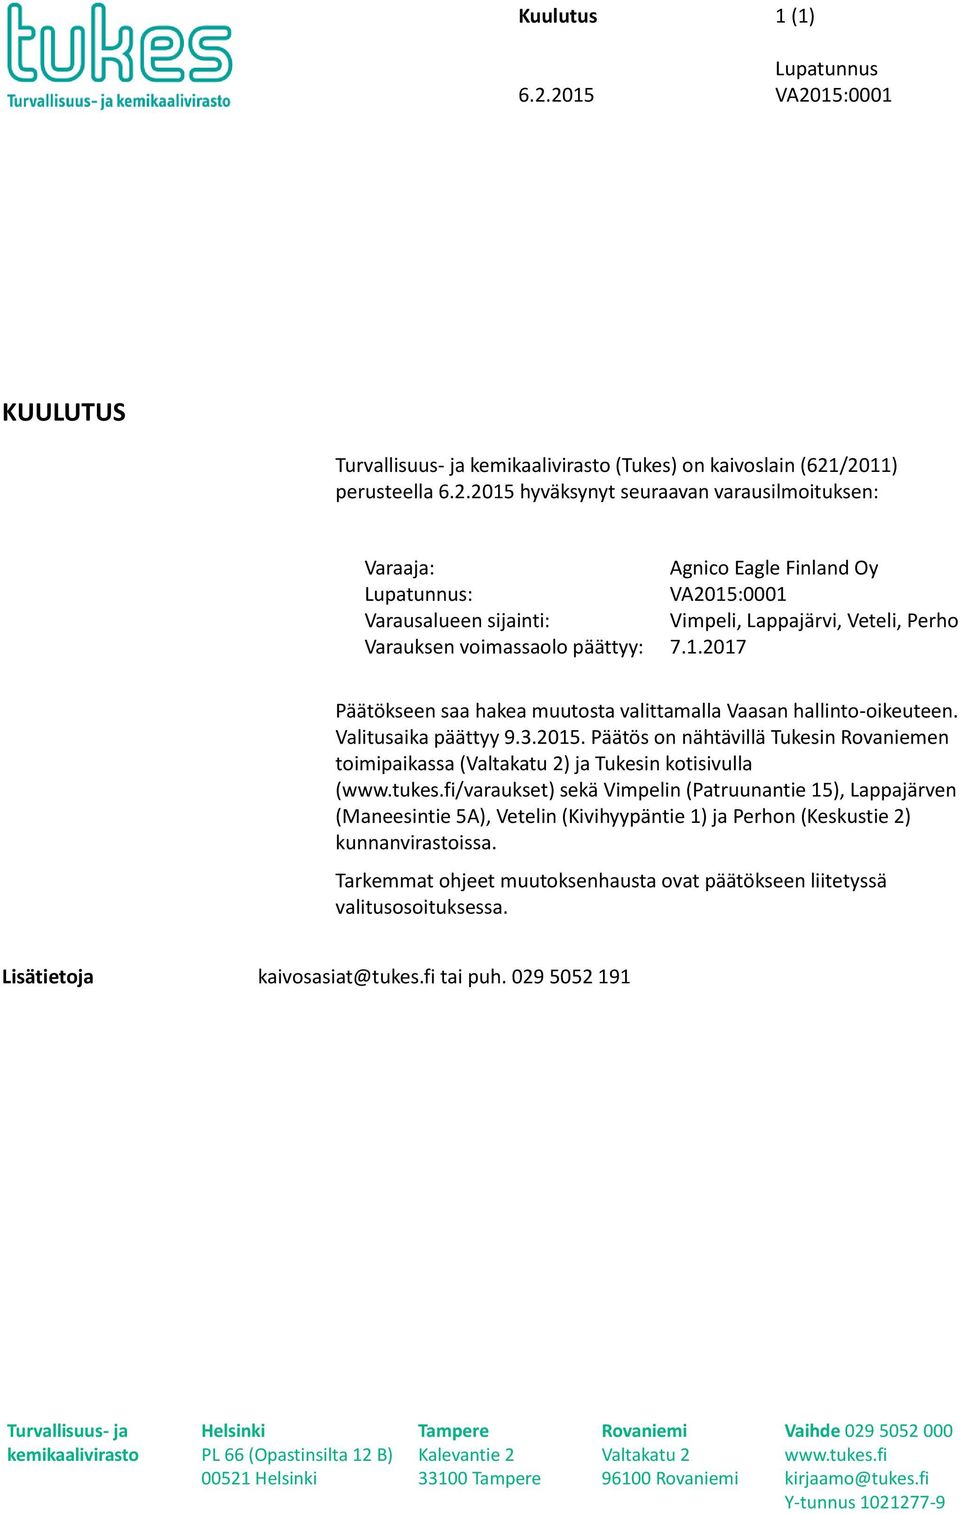 Päätös on nähtävillä Tukesin Rovaniemen toimipaikassa (Valtakatu 2) ja Tukesin kotisivulla (www.tukes.